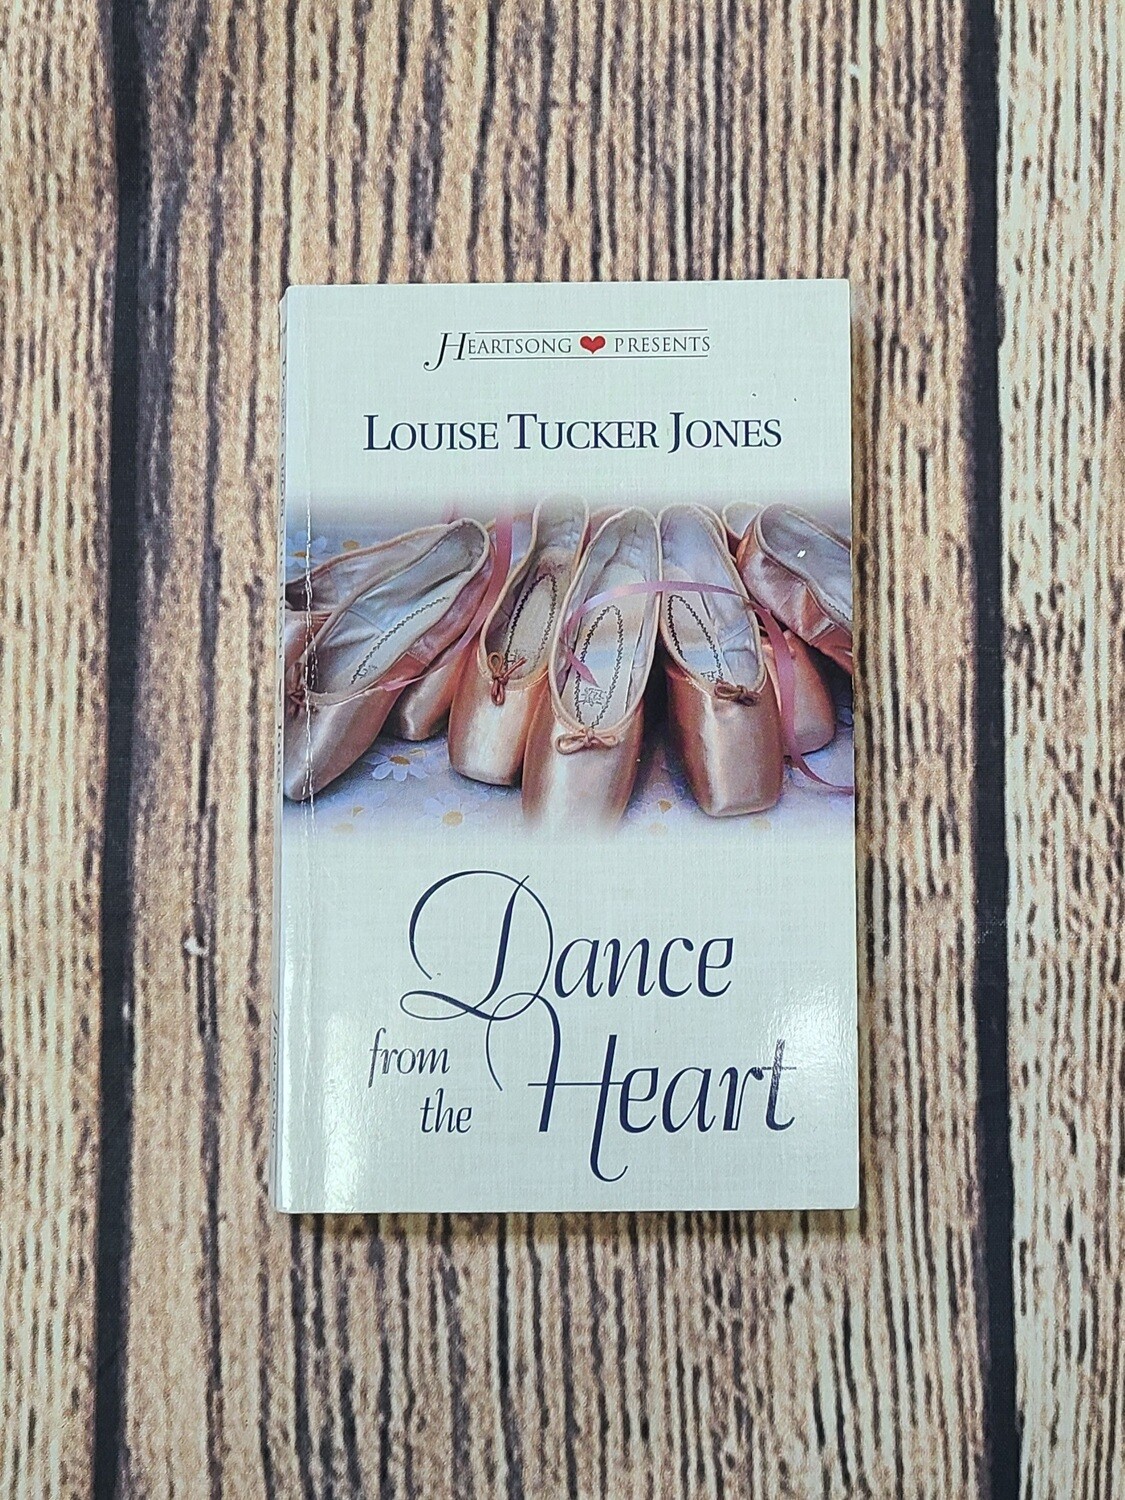 Dance from the Heart by Louise Tucker Jones